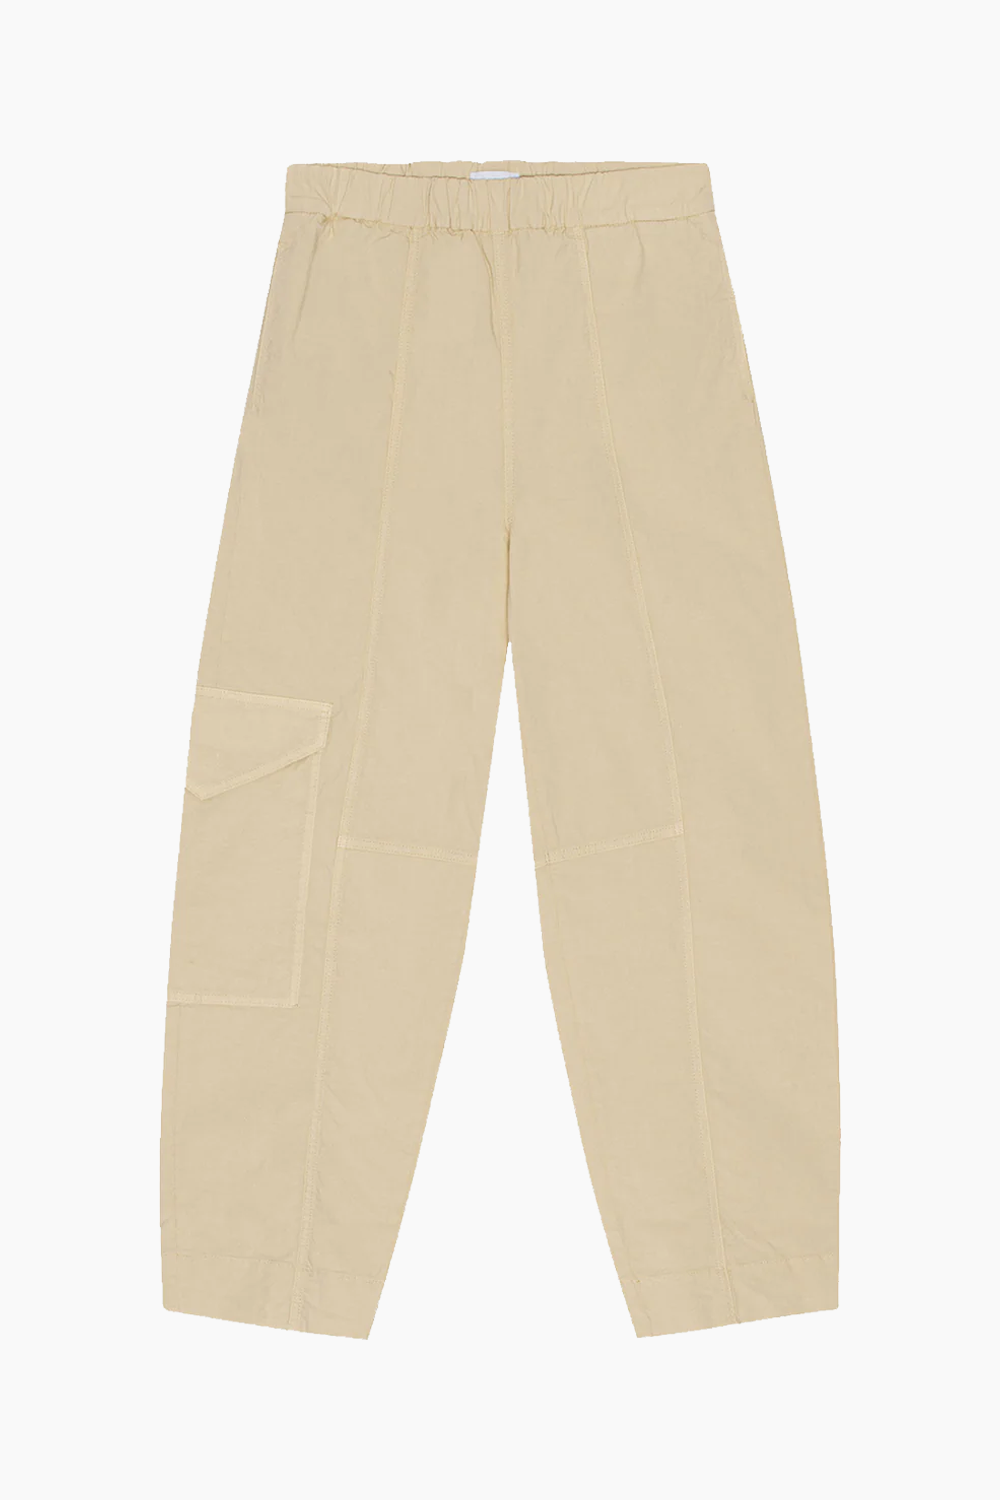 Washed Cotton Canvas Elasticated Curve Pants F8073 - Pale Khaki - GANNI